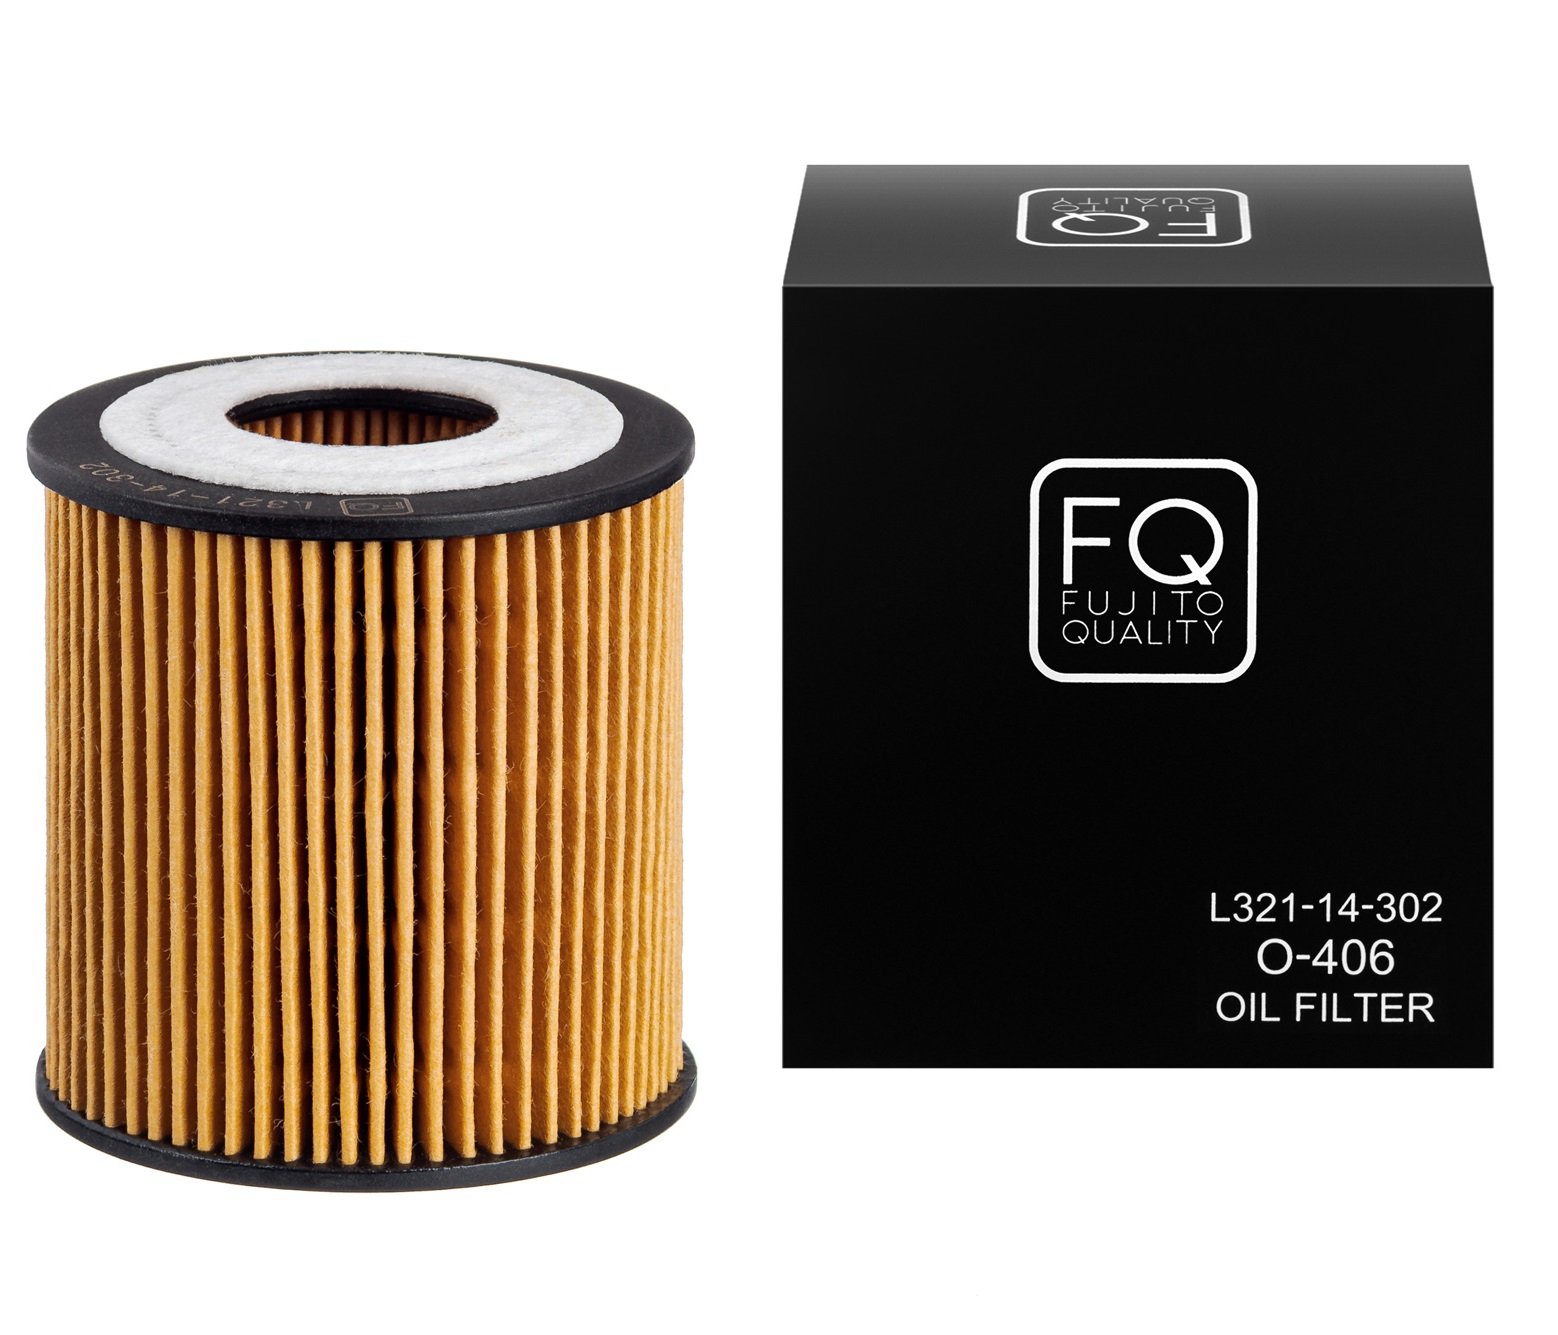 FQ, Фильтр масляный, O-406/L321-14-302, Япония